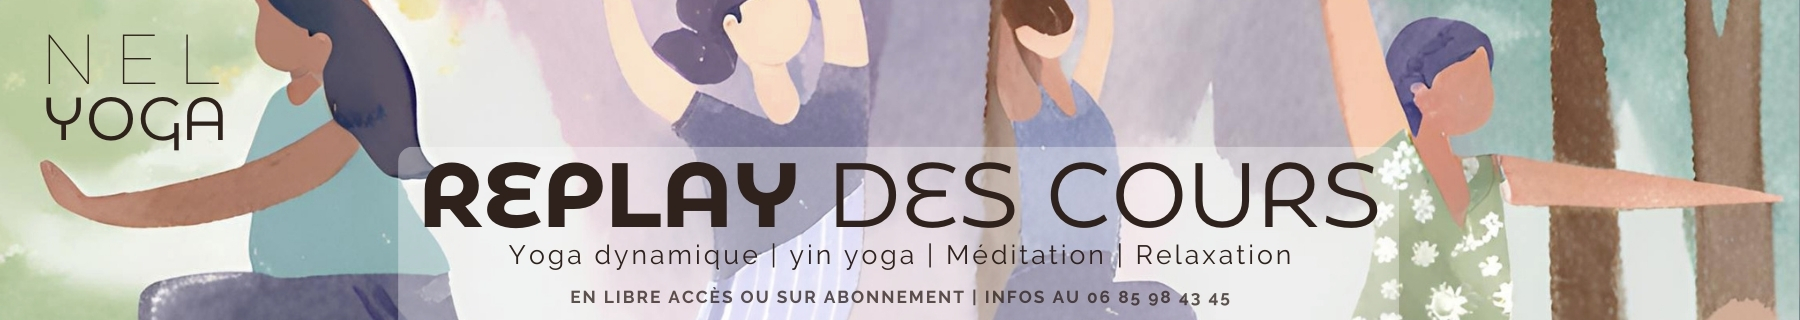 Cours de yoga à distance Reims Epernay Dormans Sézanne 